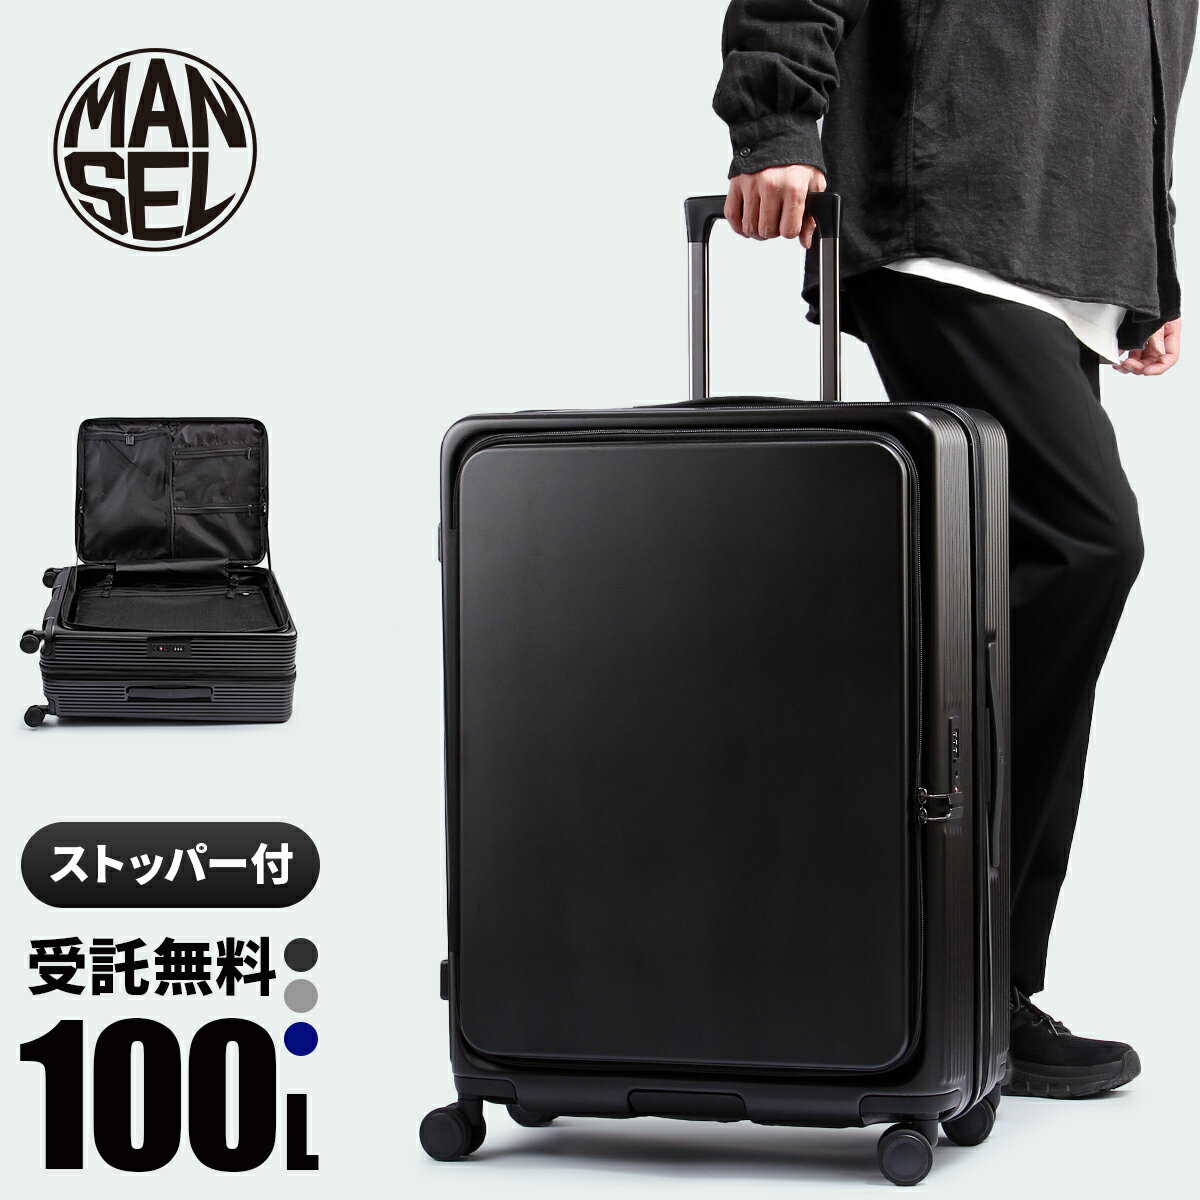 マンセル スーツケース 100L 受託手荷物 最大 Lサイズ LL XL フロントオープン ストッパー付き 拡張 軽量 前開き 横開き 海外 大型 大容量 ポケット ブランド キャリーケース おしゃれ 158センチ 以内 男性 女性 mansel 0011